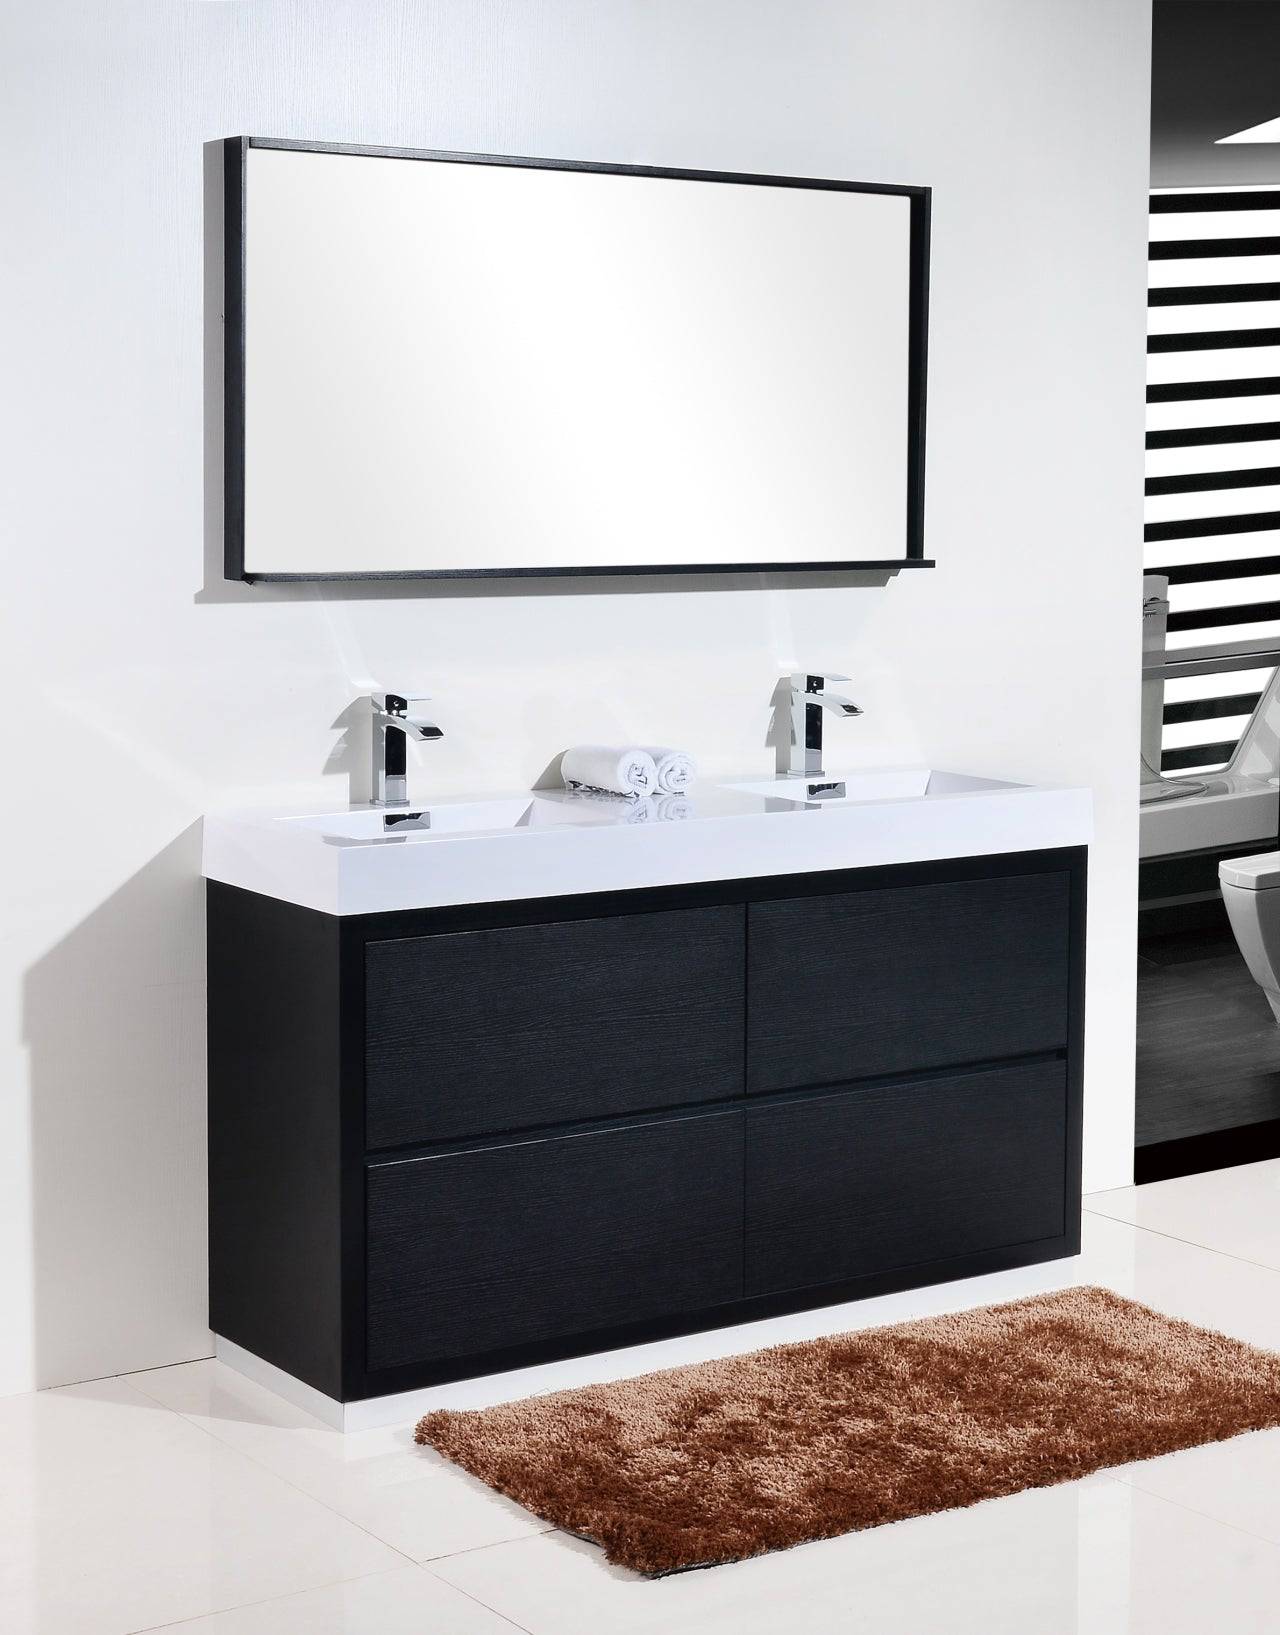 Kube Bath Bliss 60" Floor Mount Free Standing Double Sink Bathroom Vanity With 6 Drawers Acrylic Countertop - Renoz